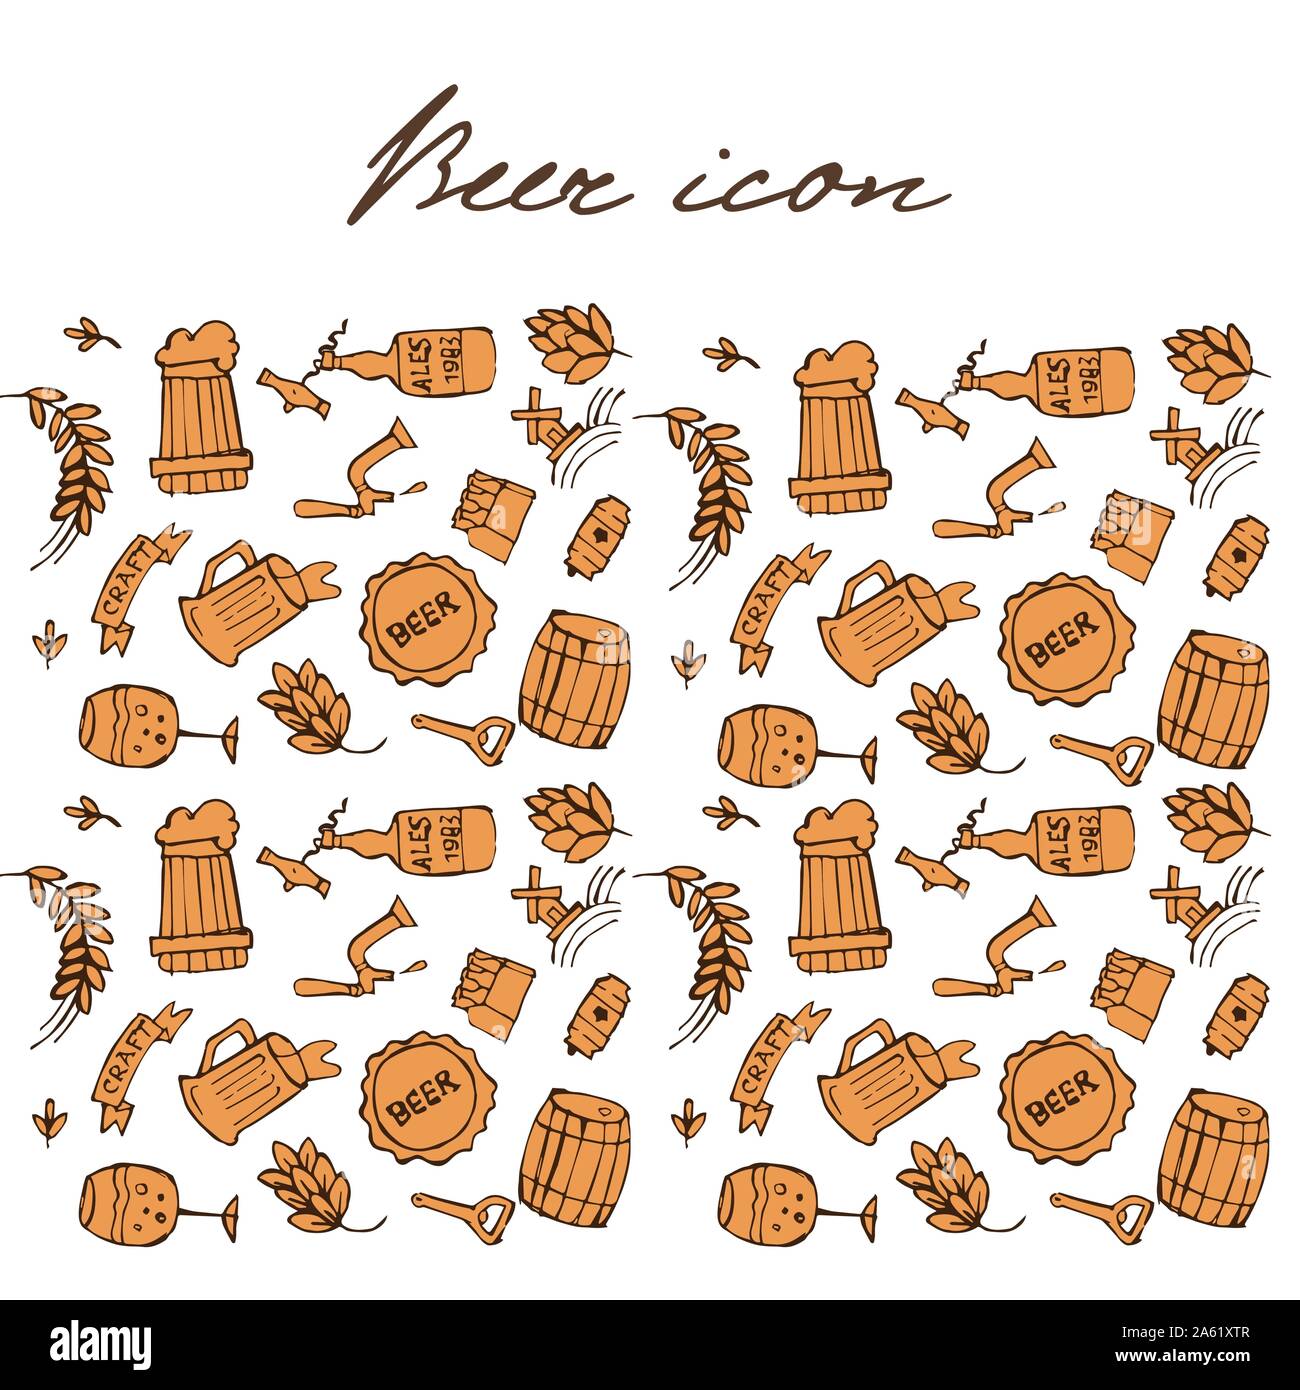 Ensemble d'icônes doodle connexes de la bière. Des croquis dessinés à la main. Vector illustration isolé. Illustration de Vecteur